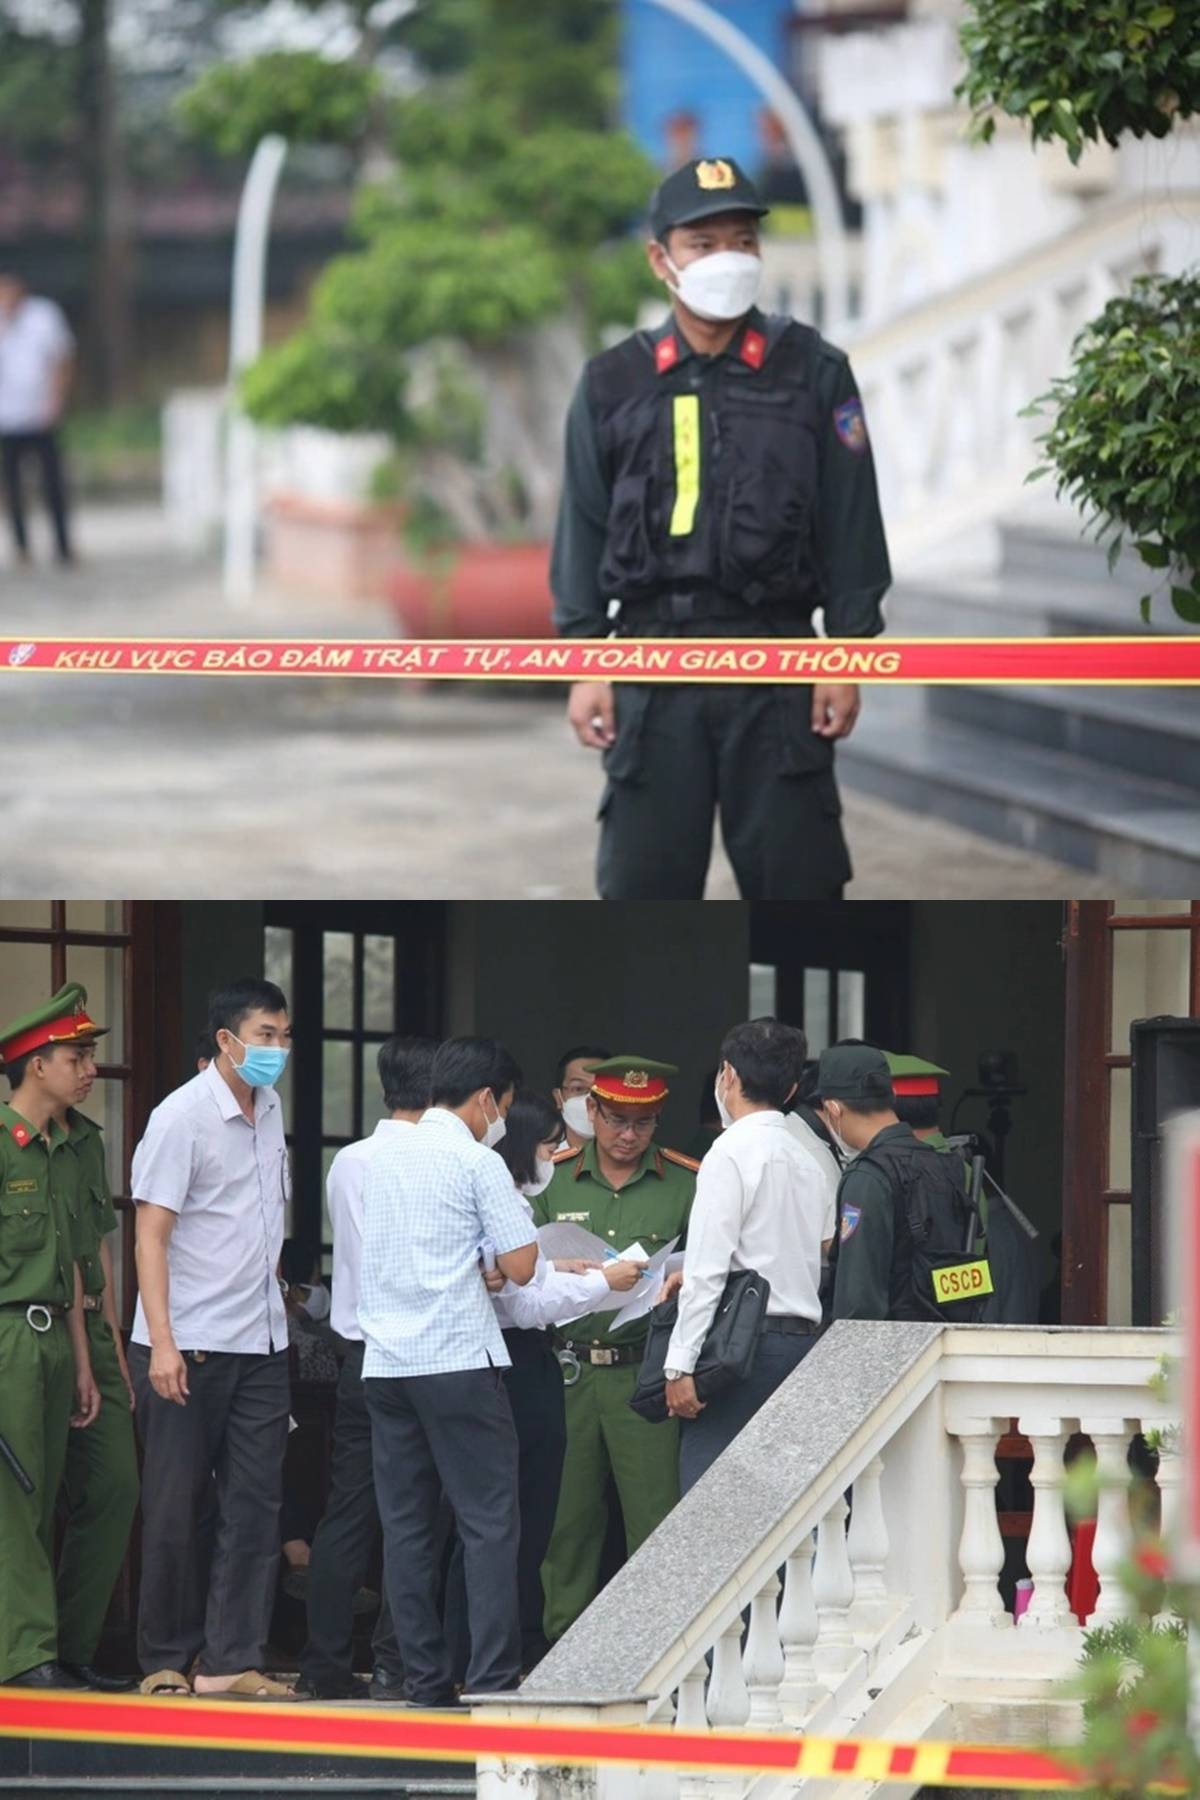 TRỰC TIẾP phiên xử Tịnh Thất Bồng Lai sáng nay: 'Thầy ông nội' lộ diện hốc rộc, Youtuber đông như kiến, an ninh siết chặt